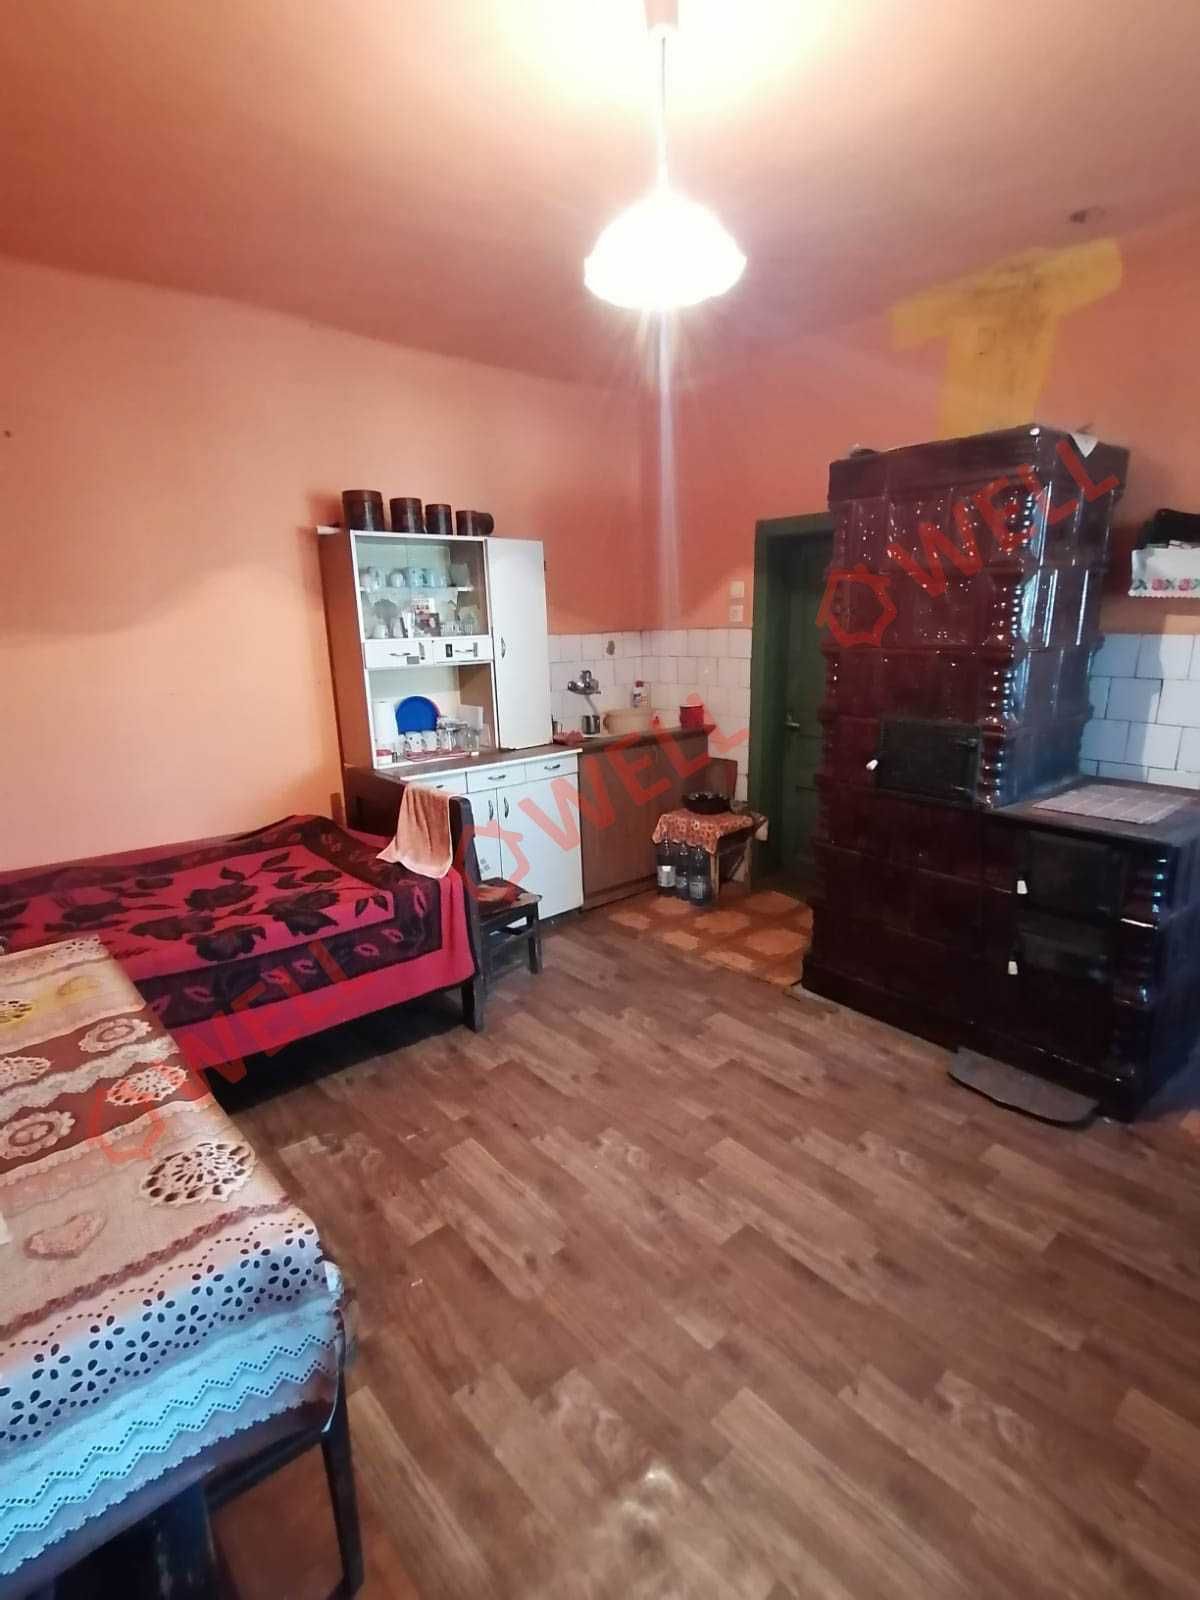 De vânzare casă familială în Sânzieni pe strada Pal!